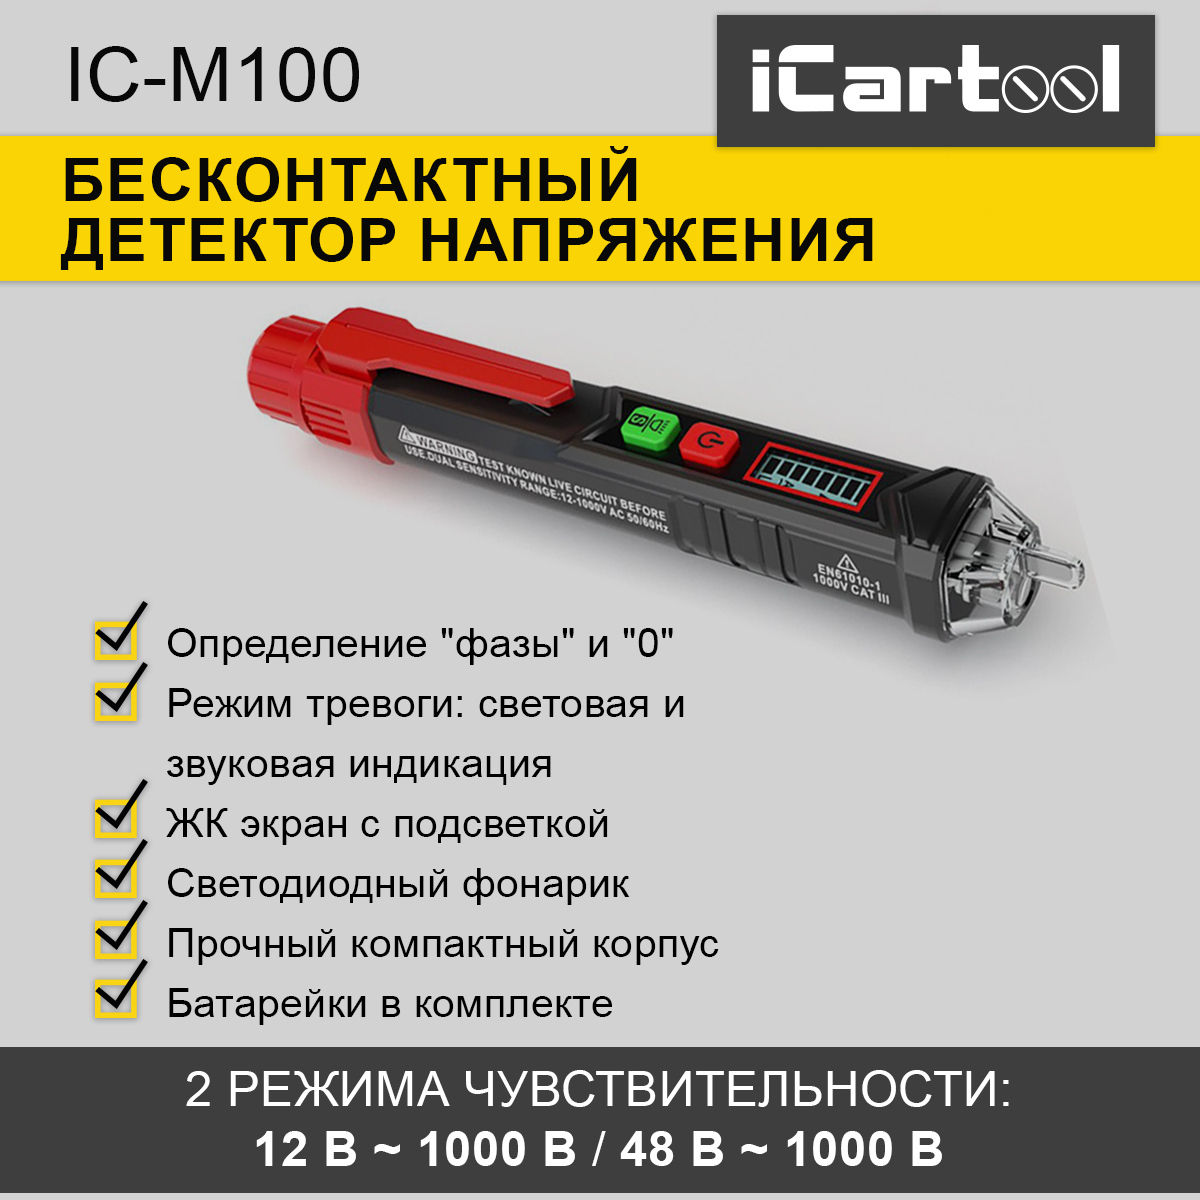 Бесконтактный детектор напряжения iCartool IC-M100 комплект мягких индукционных нагревателей icartool